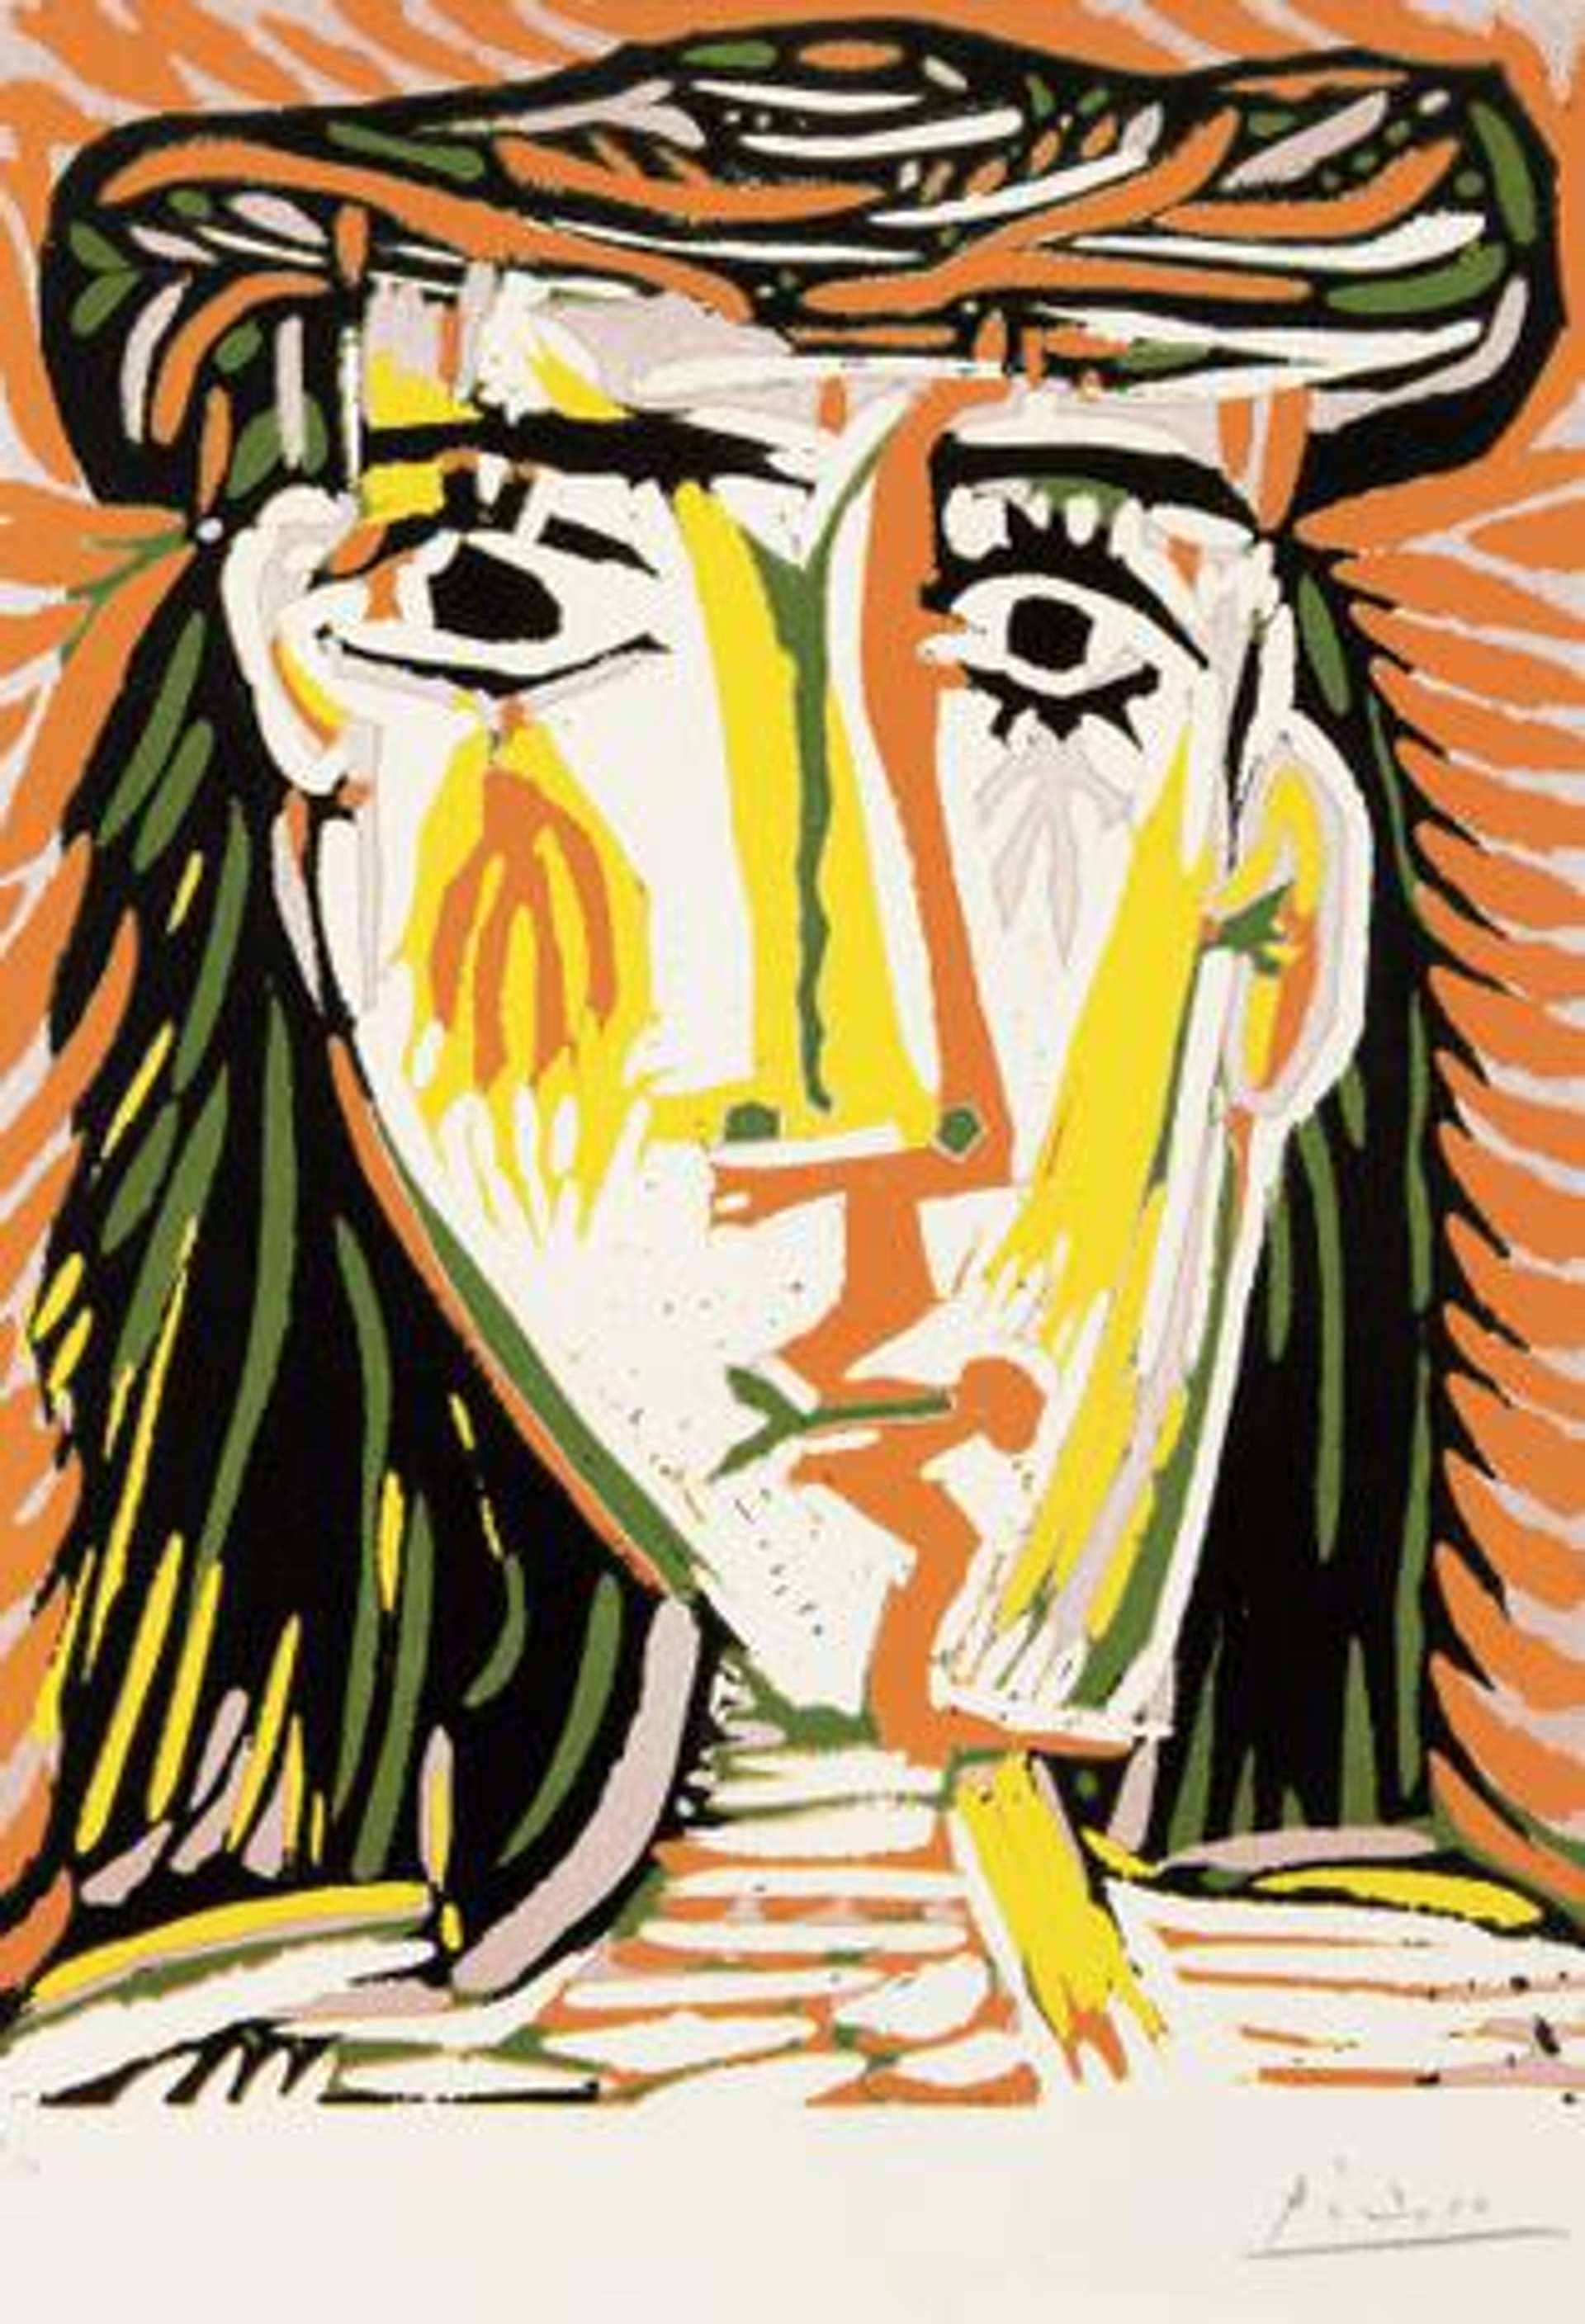 Femme Au Chapeau by Pablo Picasso